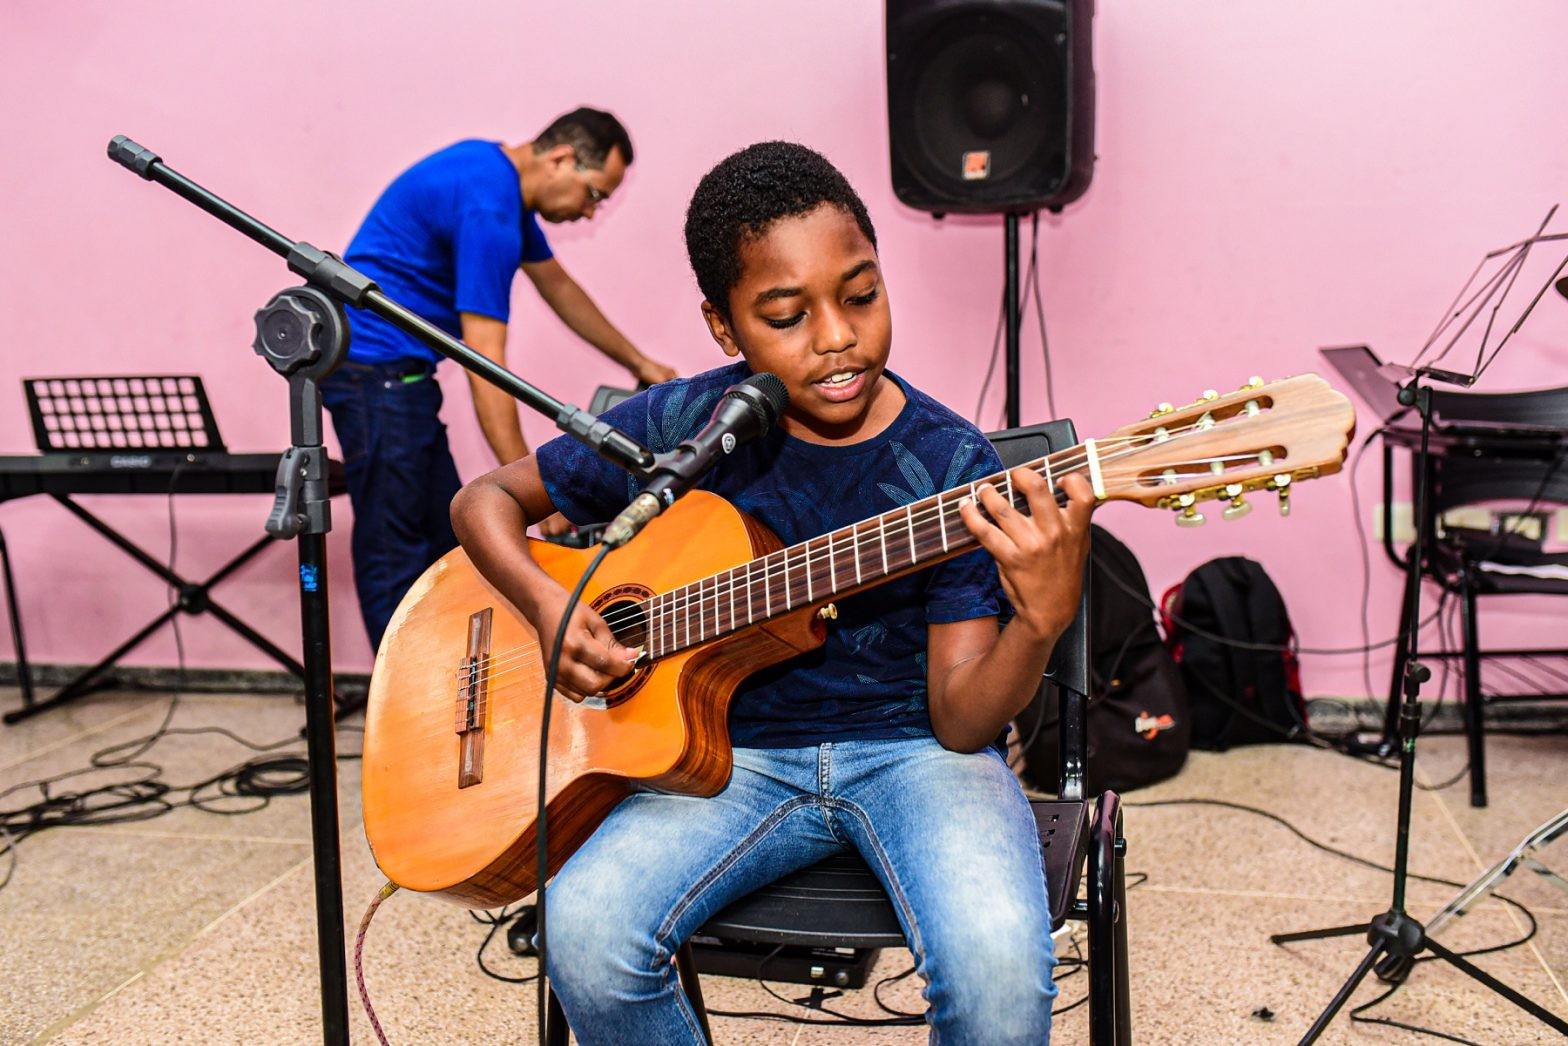 Escola de música abre vagas para aulas gratuitas em Ji-Paraná, RO